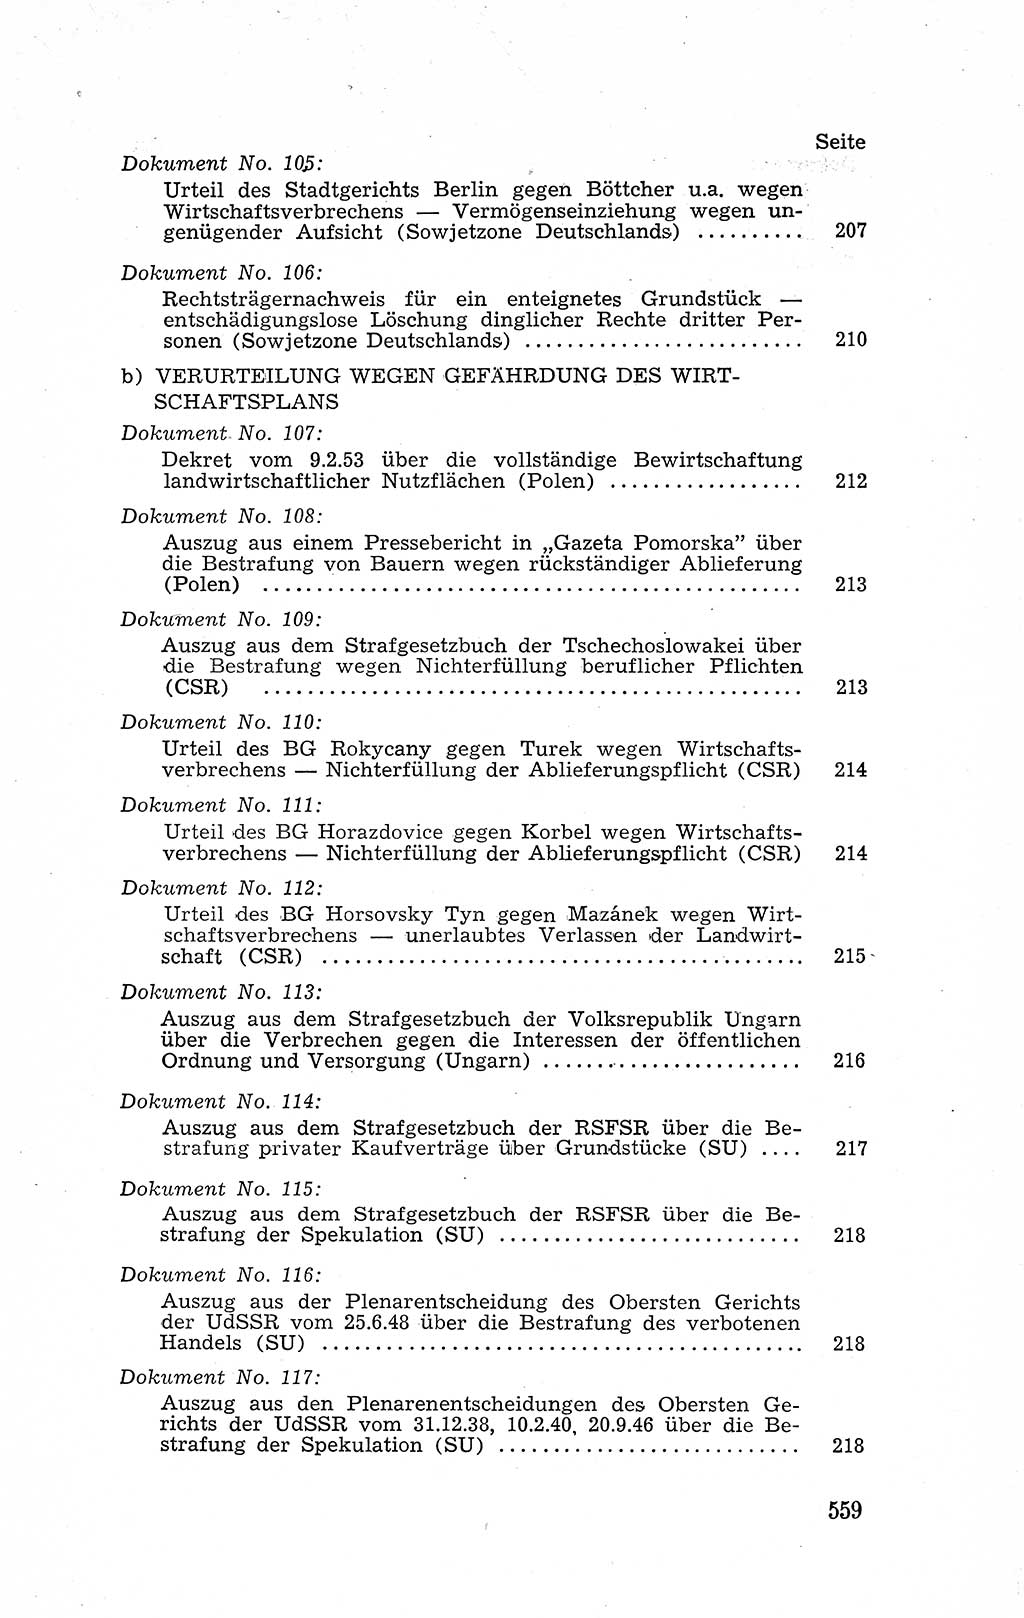 Recht in Fesseln, Dokumente, Internationale Juristen-Kommission [Bundesrepublik Deutschland (BRD)] 1955, Seite 559 (R. Dok. IJK BRD 1955, S. 559)